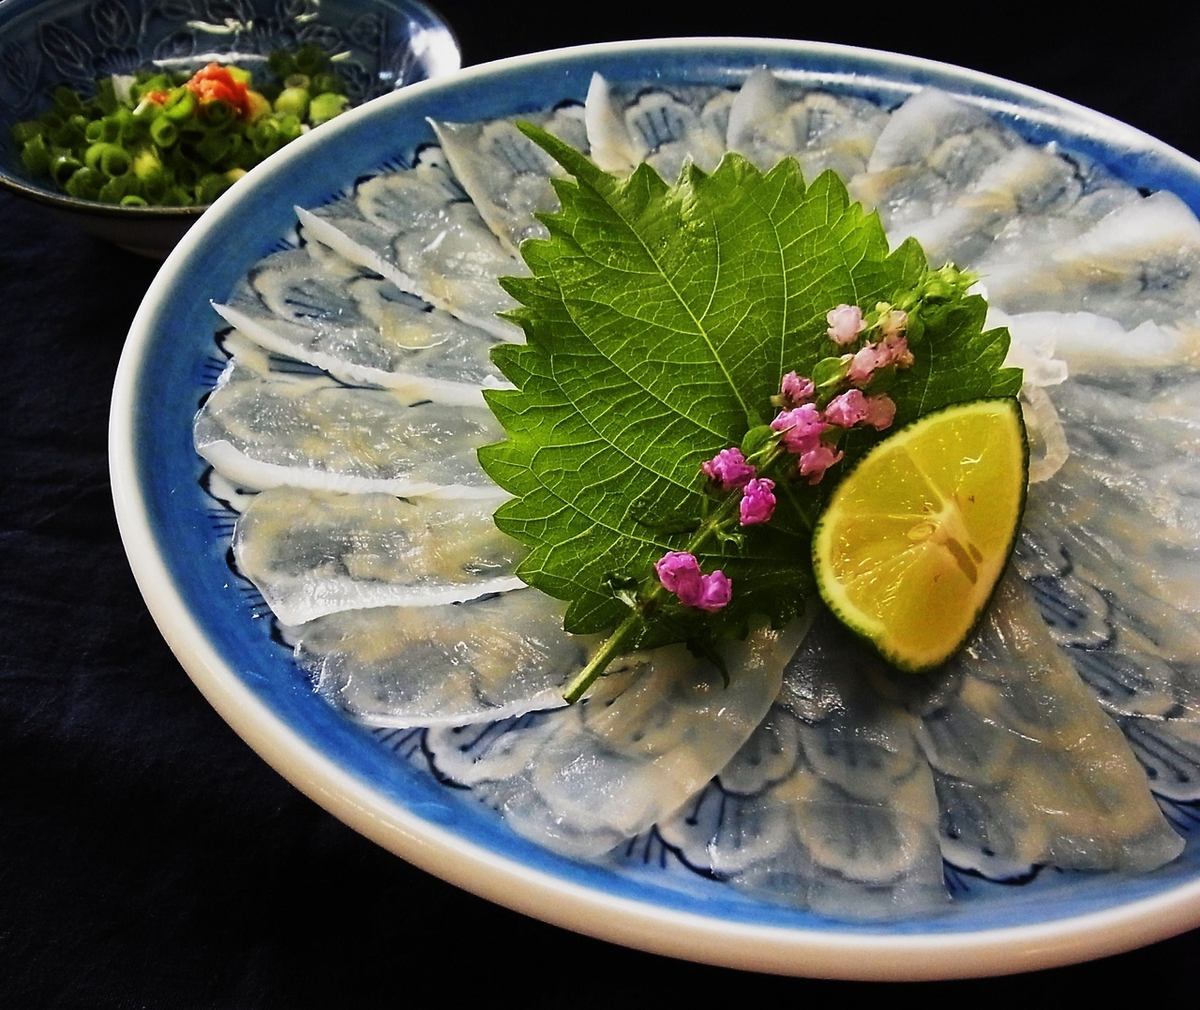 提供下关福、广岛牡蛎、新泻山海的恩惠!第三代弘经营的老字号餐厅。